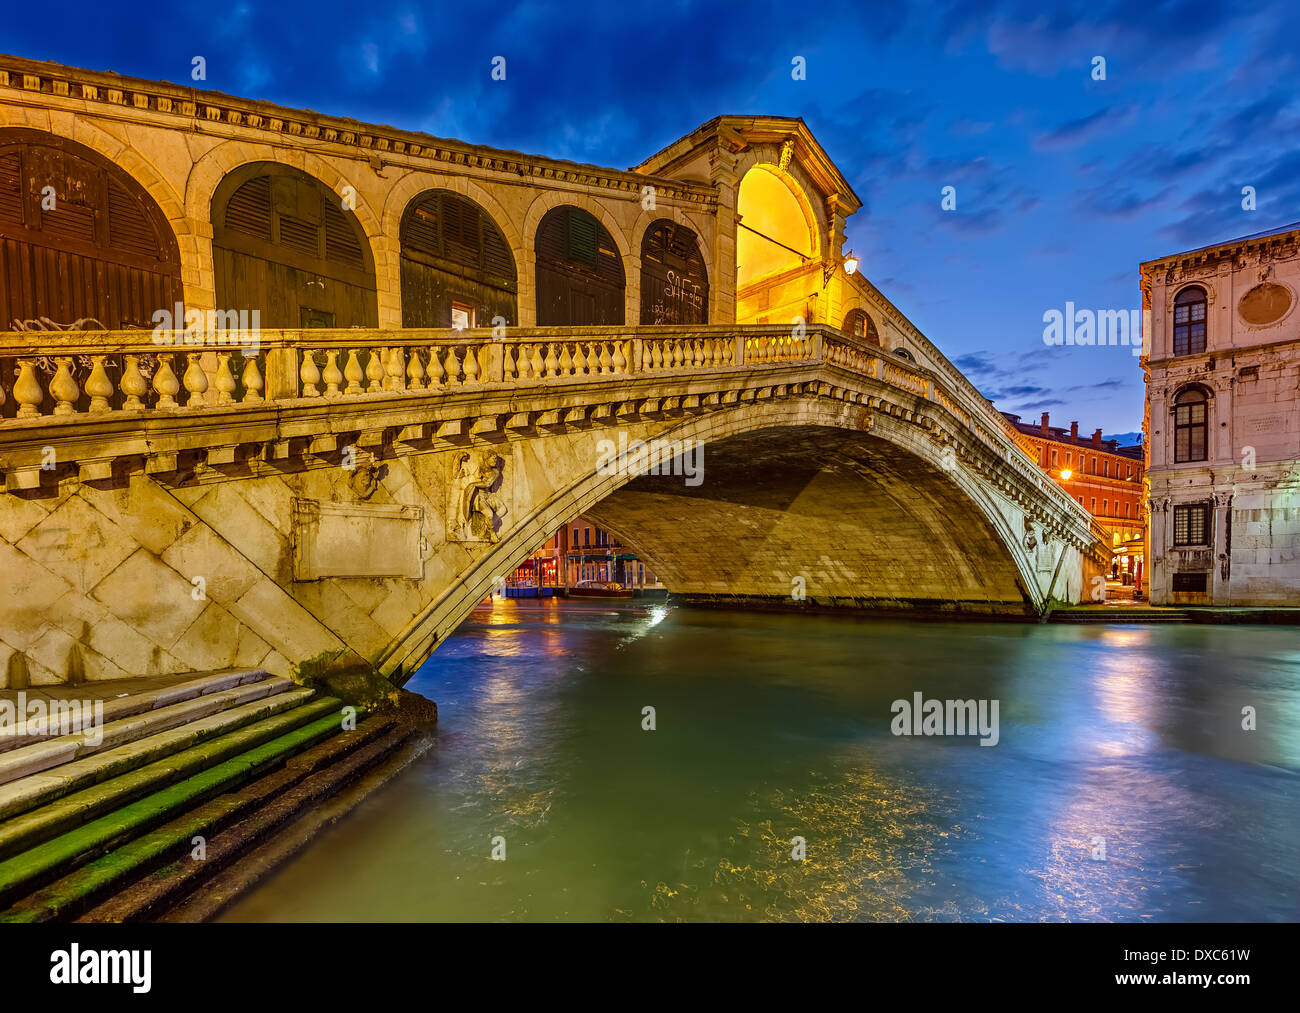 Rialto bridge, Venice Stock Photo